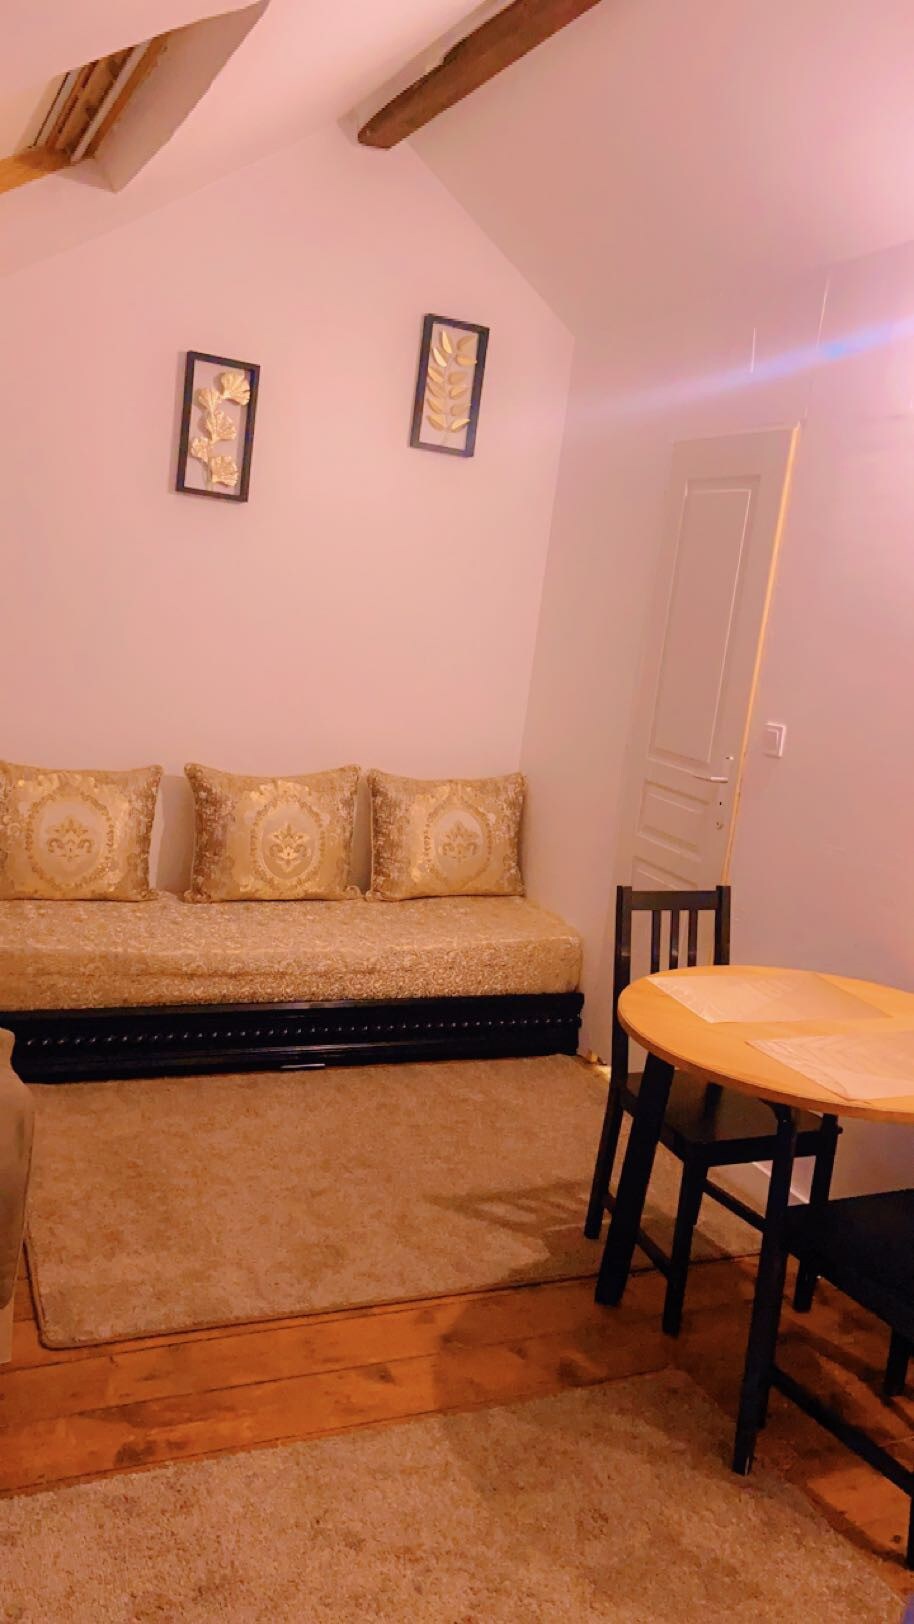 舒适的单间公寓- 1张双人床、小厨房、独立卫生间